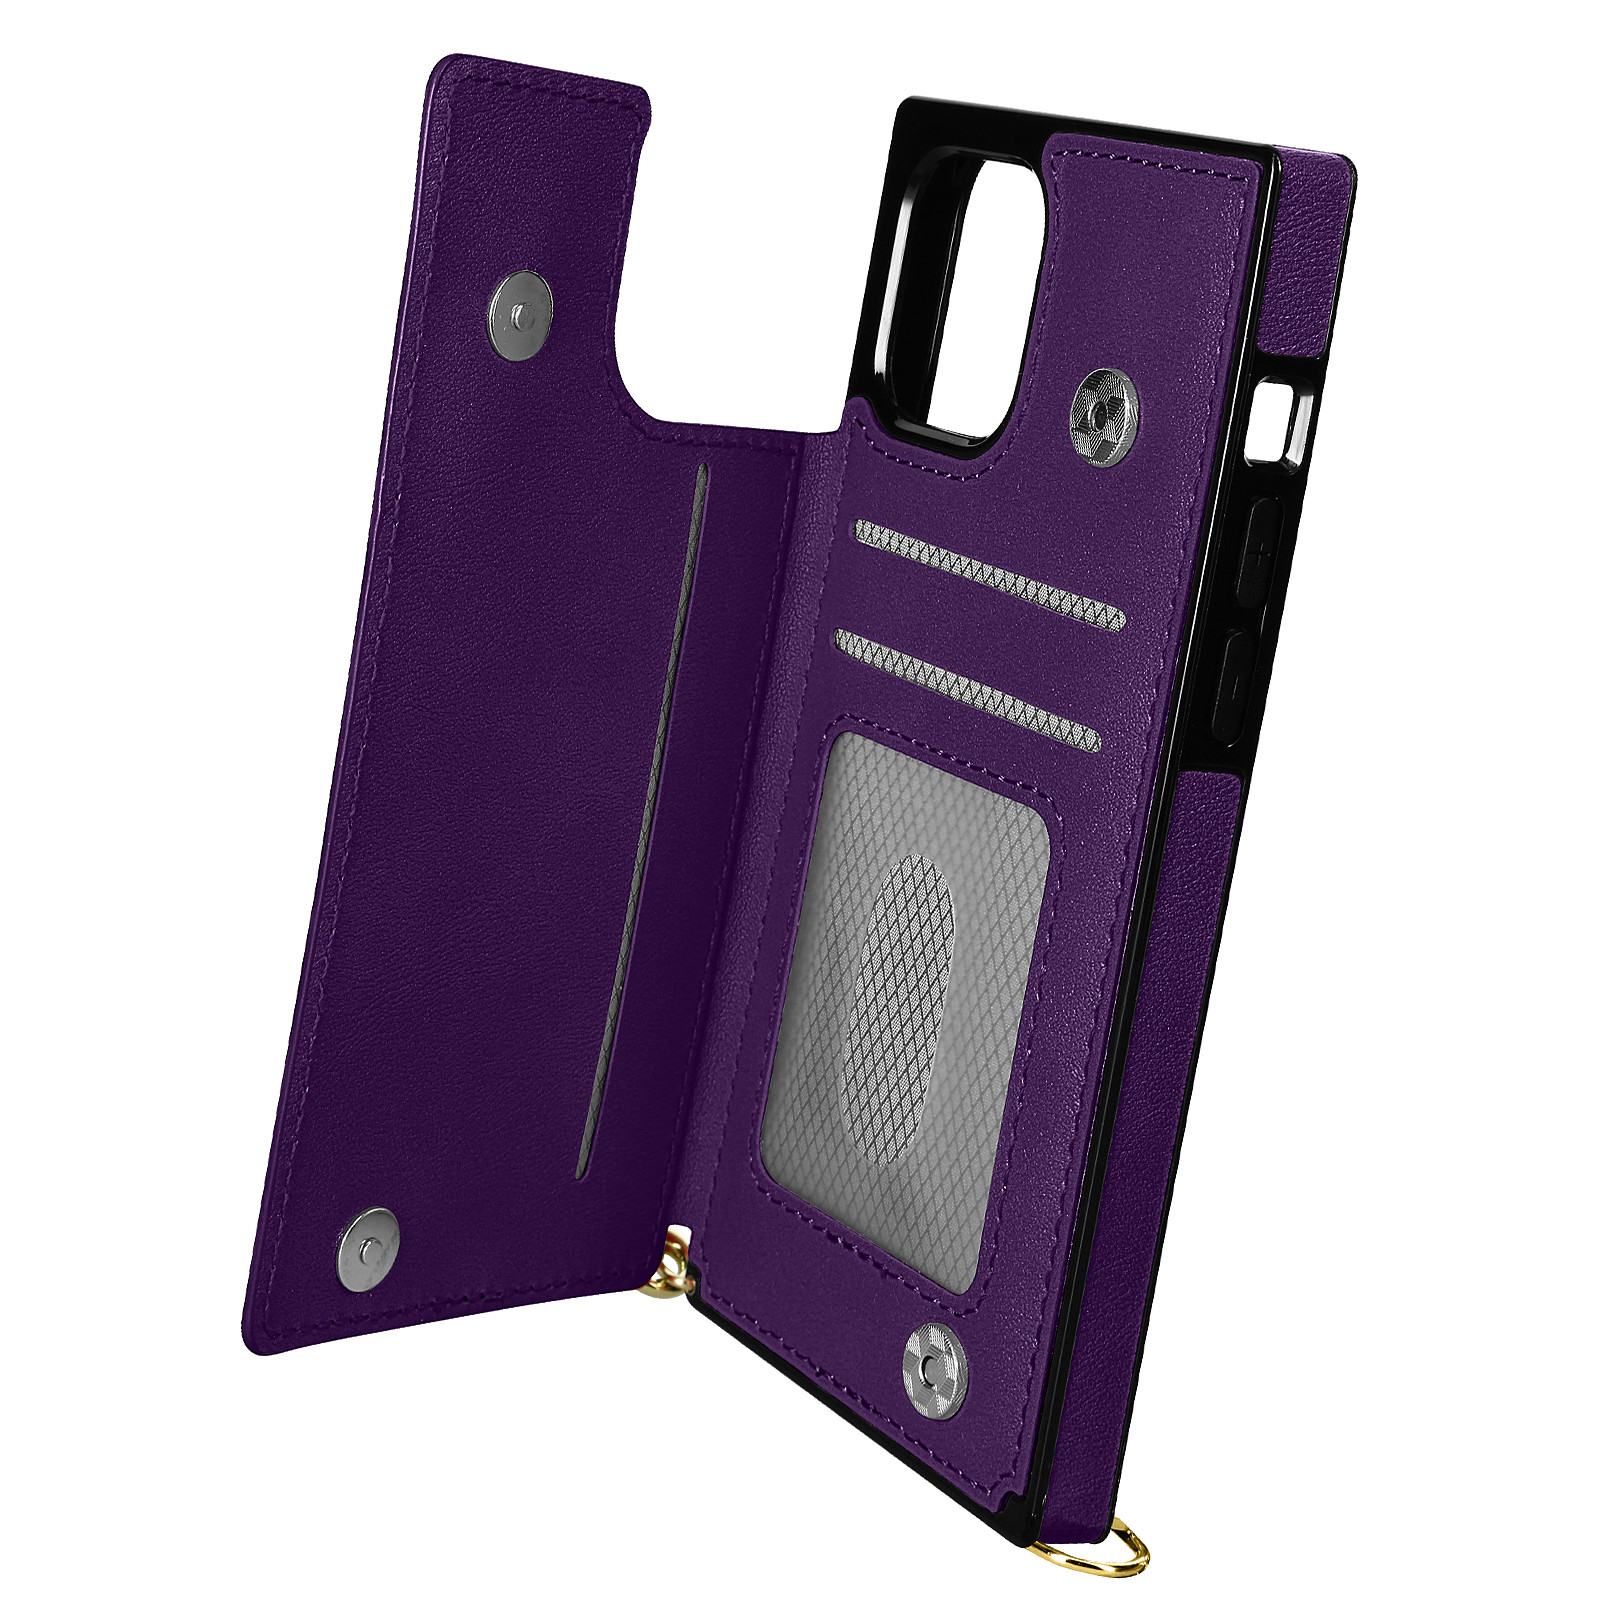 Avizar Coque Cordon pour iPhone 11 Pro Max avec Porte-cartes Support Video Lanière violet fonce - Coque telephone Avizar